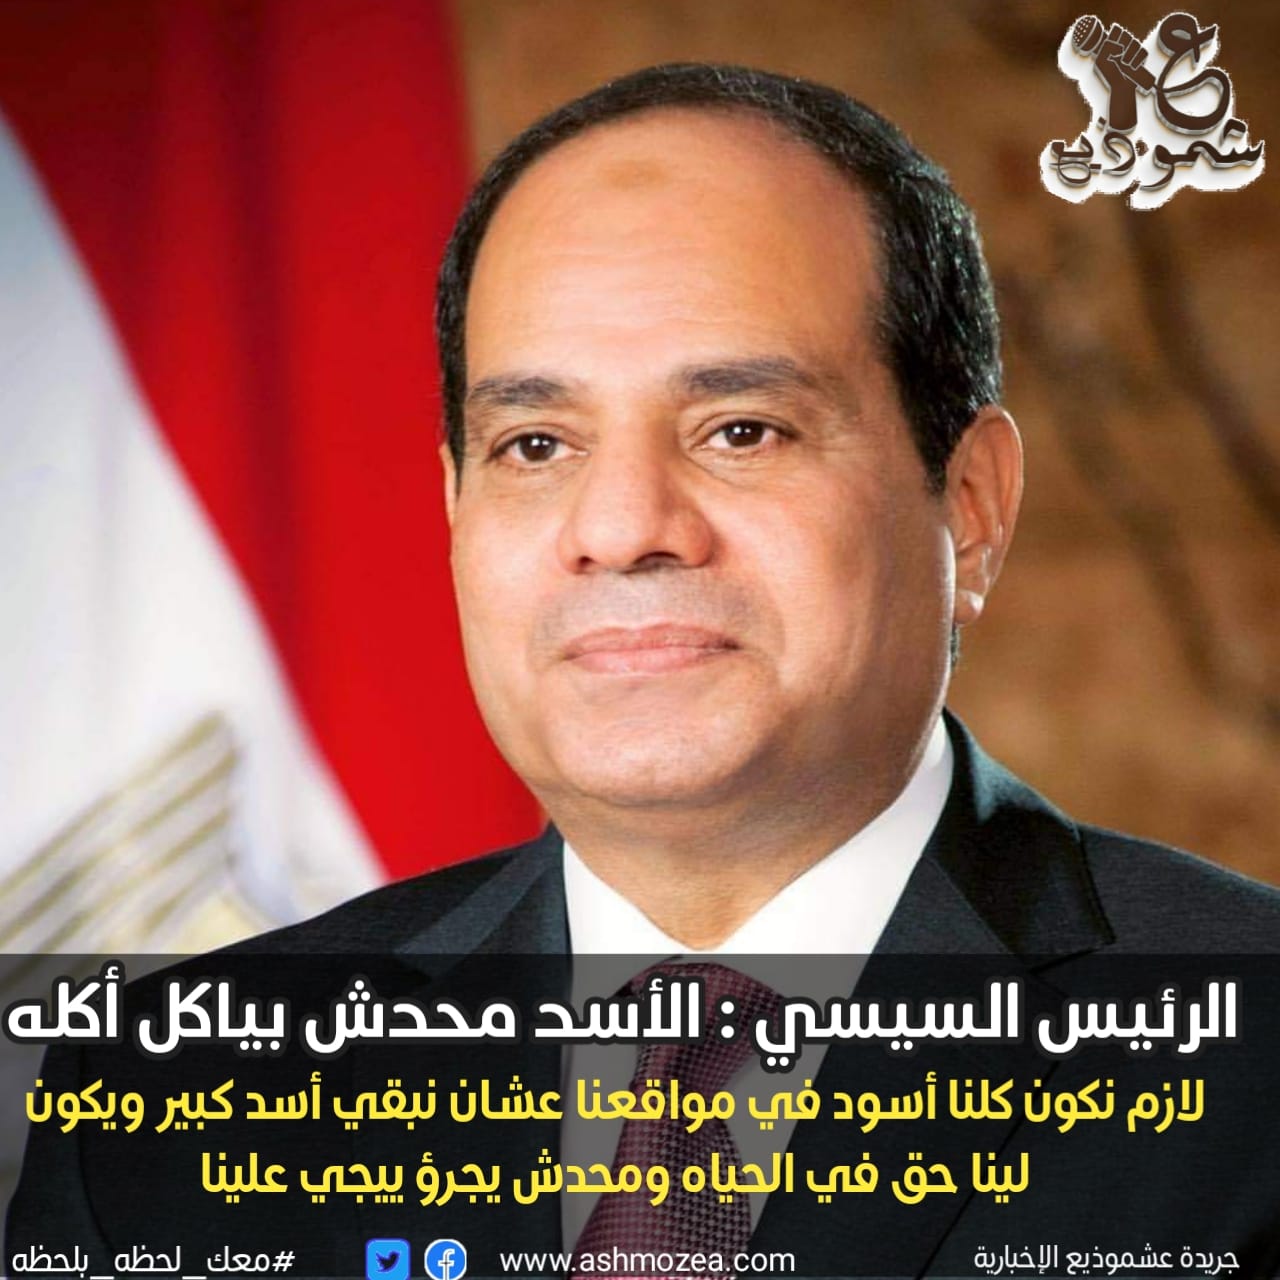 الرئيس السيسي للمصريين:  لازم كلنا نبقا أسود في مواقعنا عشان نبقي أسد كبير .